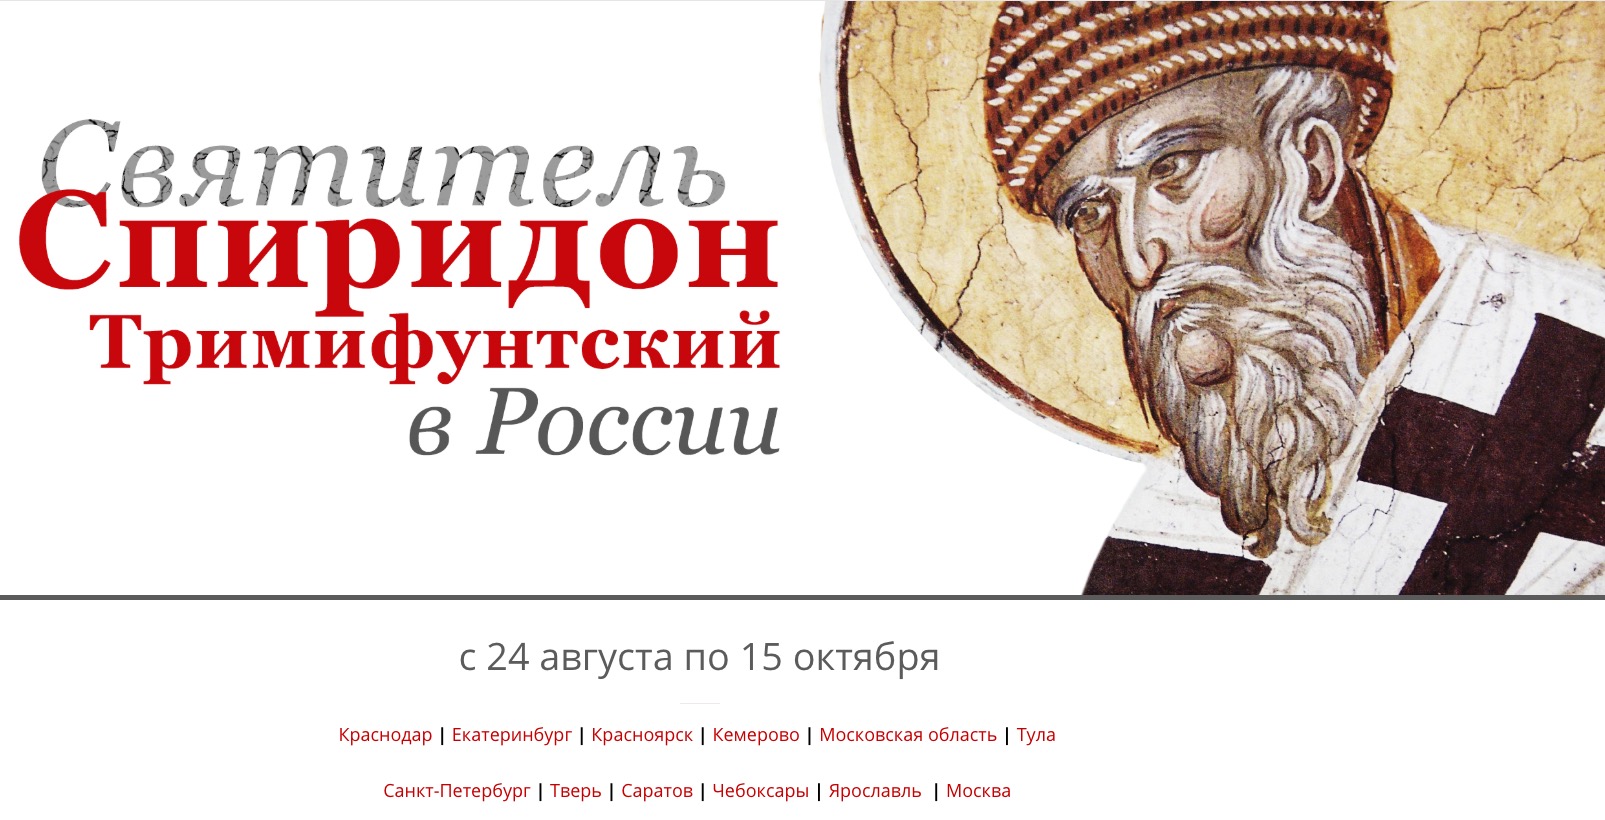 Un site internet a été ouvert, dédié à la venue des reliques de saint spyridon en russie